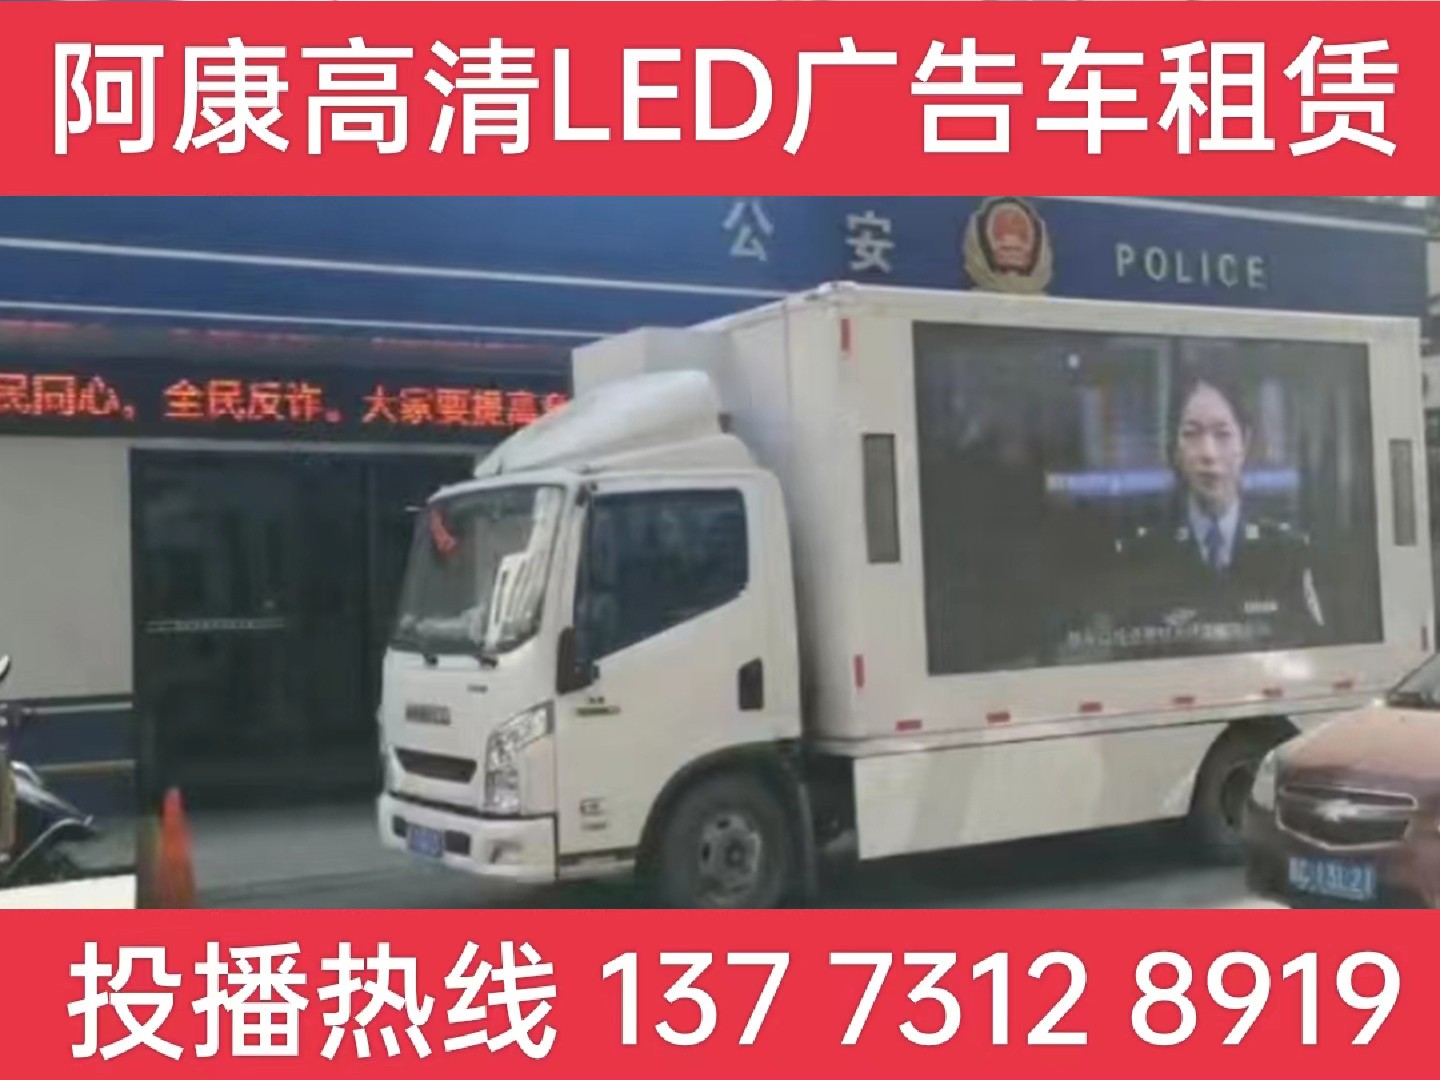 秦淮区LED广告车租赁-反诈宣传